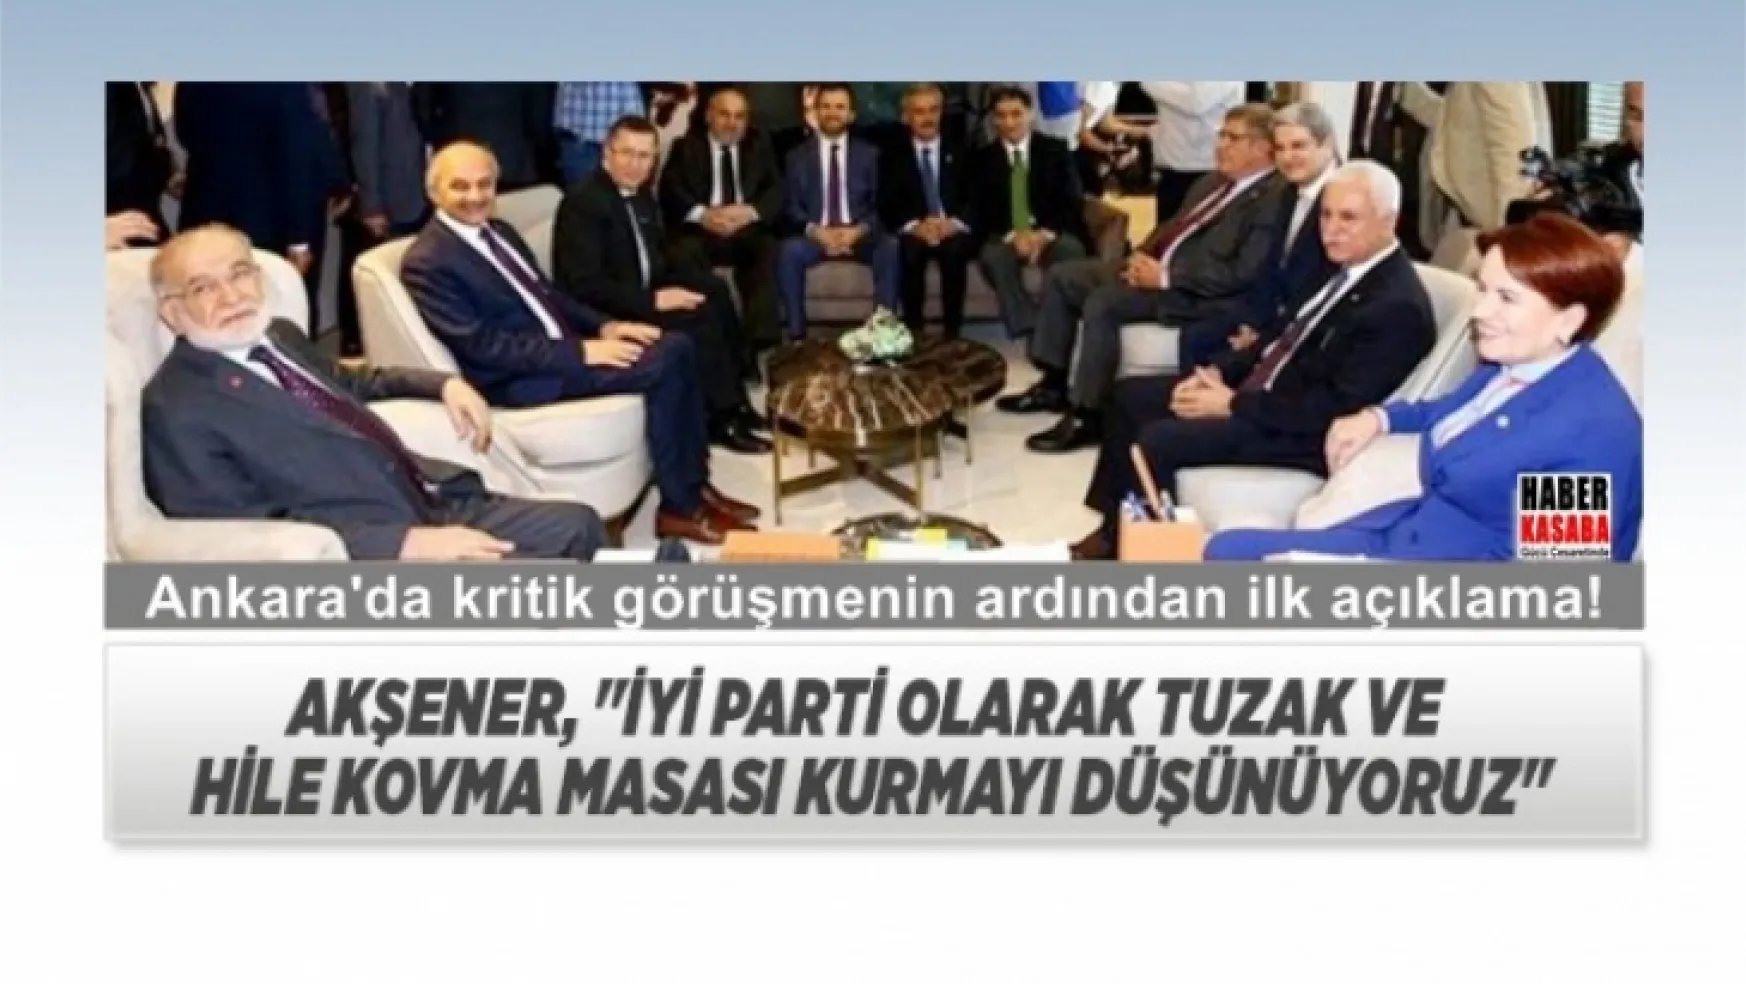 Ankara'da Kritik görüşme sonrası ilk açıklama!... 'Tuzak ve hile kovma masası kurmayı düşünüyoruz'